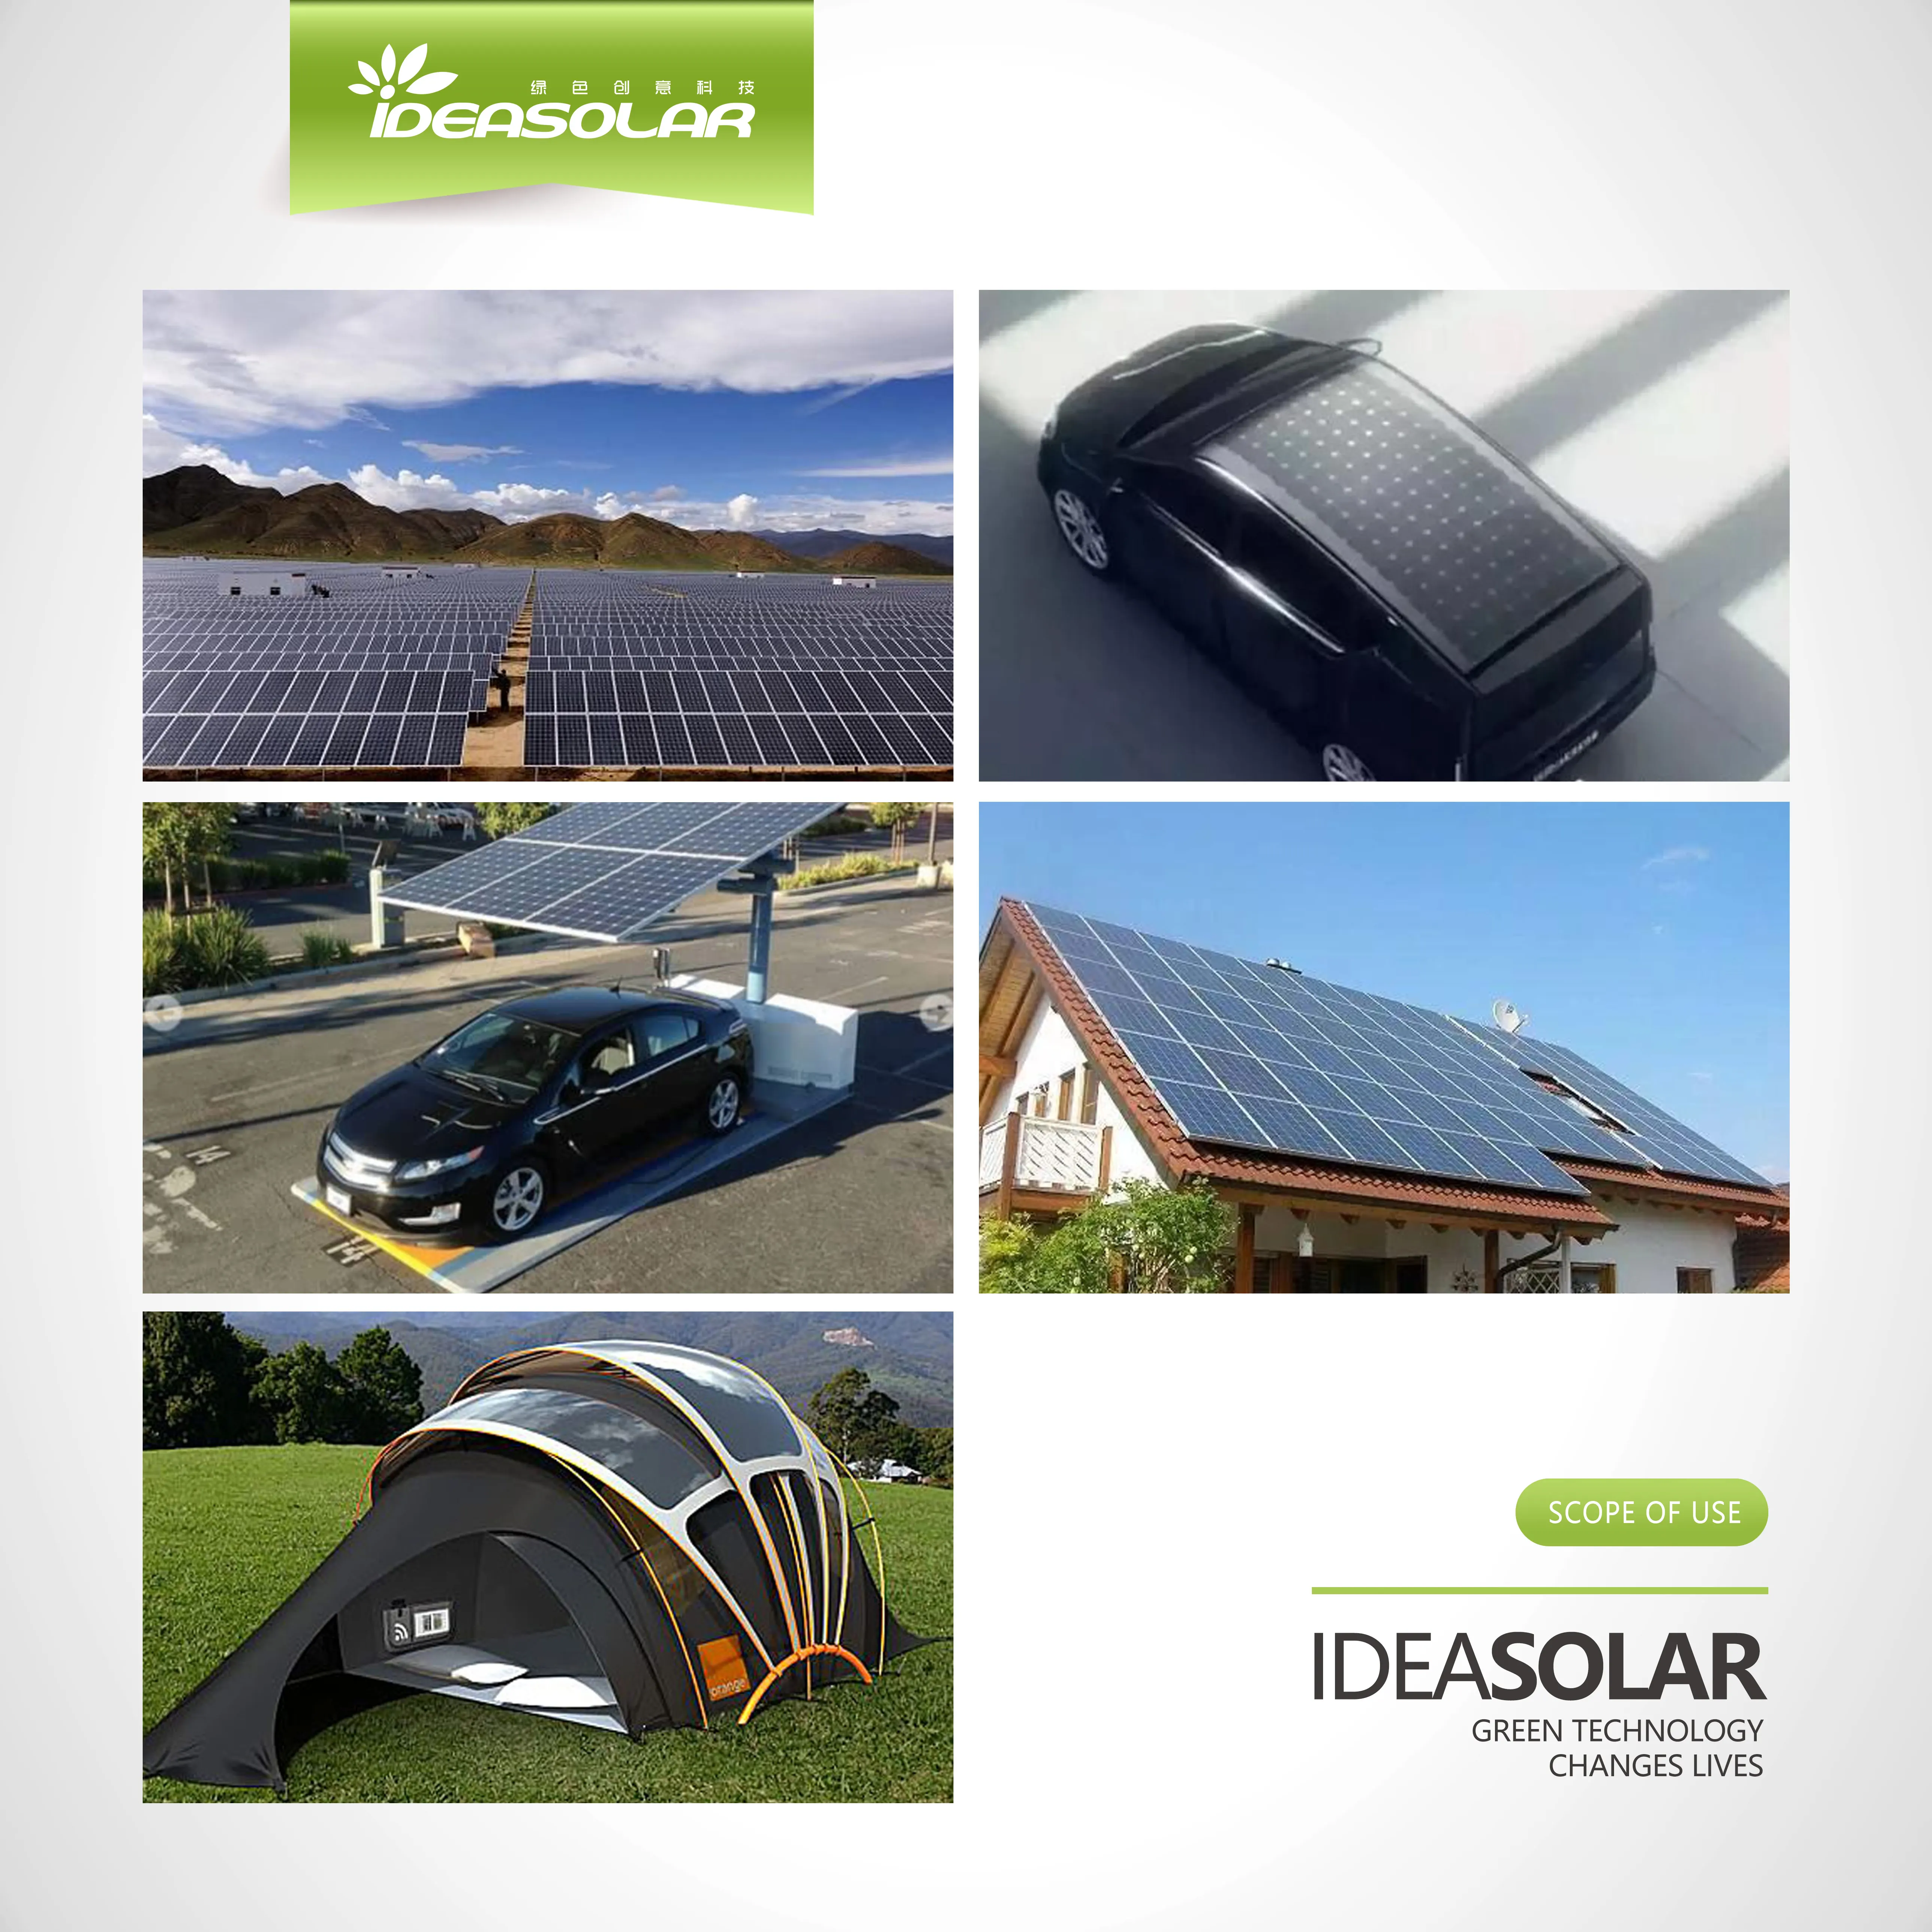 IDEA солнечная панель 150 Вт 155 Вт 160 Вт 170 Вт 175 Вт 180 Вт поликристаллический кремний Высокое качество Солнечная батарея Солнечное зарядное устройство